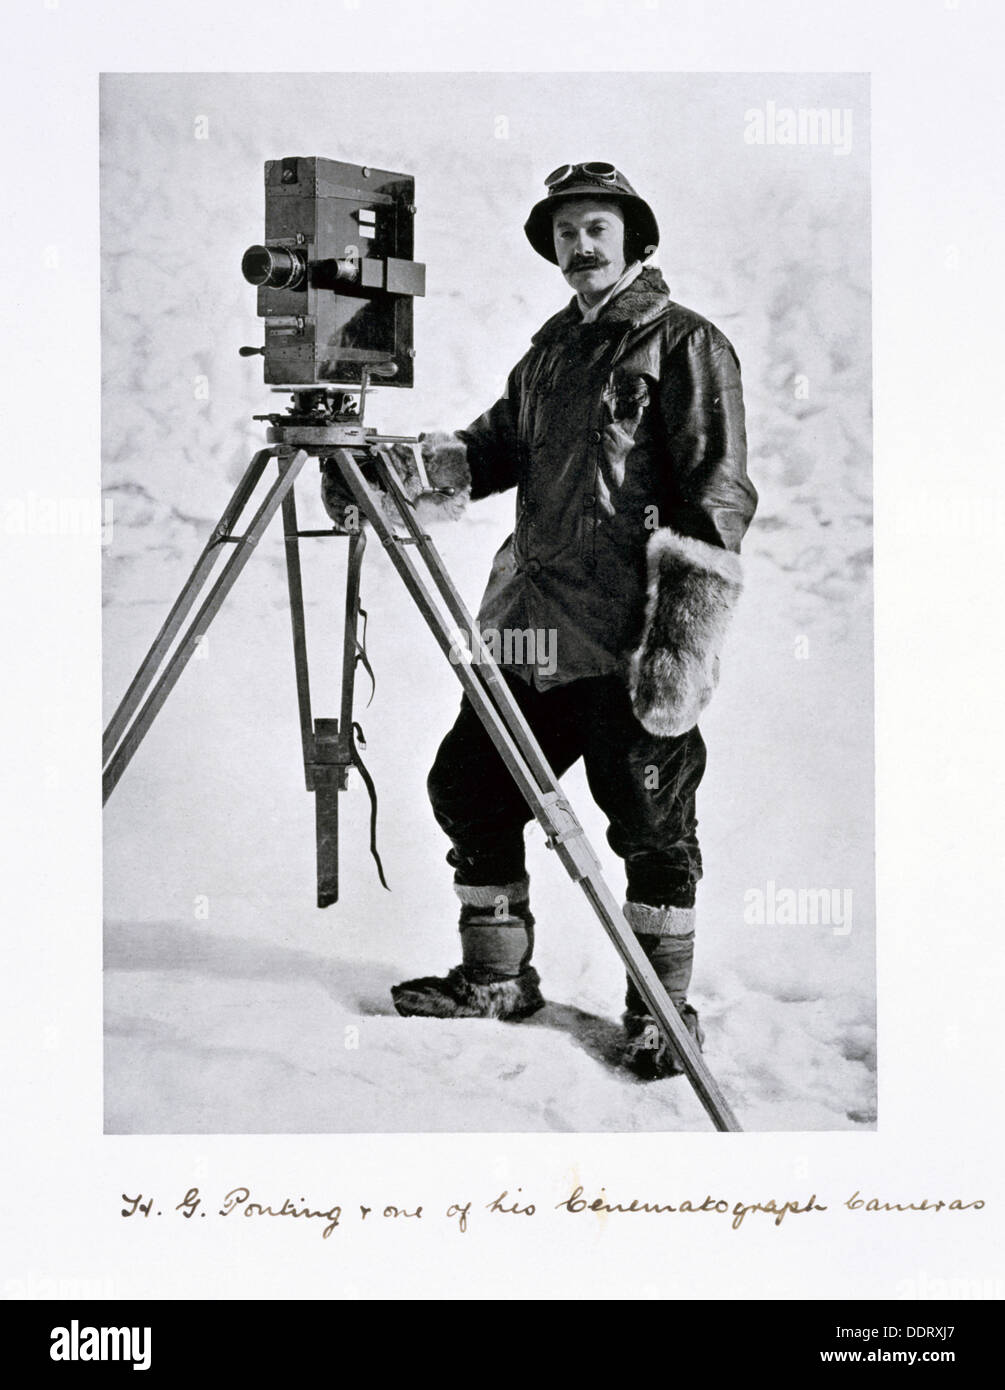 Herbert Ponting, fotógrafo británico, en la Antártida, 1910-1912. Artista: Desconocido Foto de stock